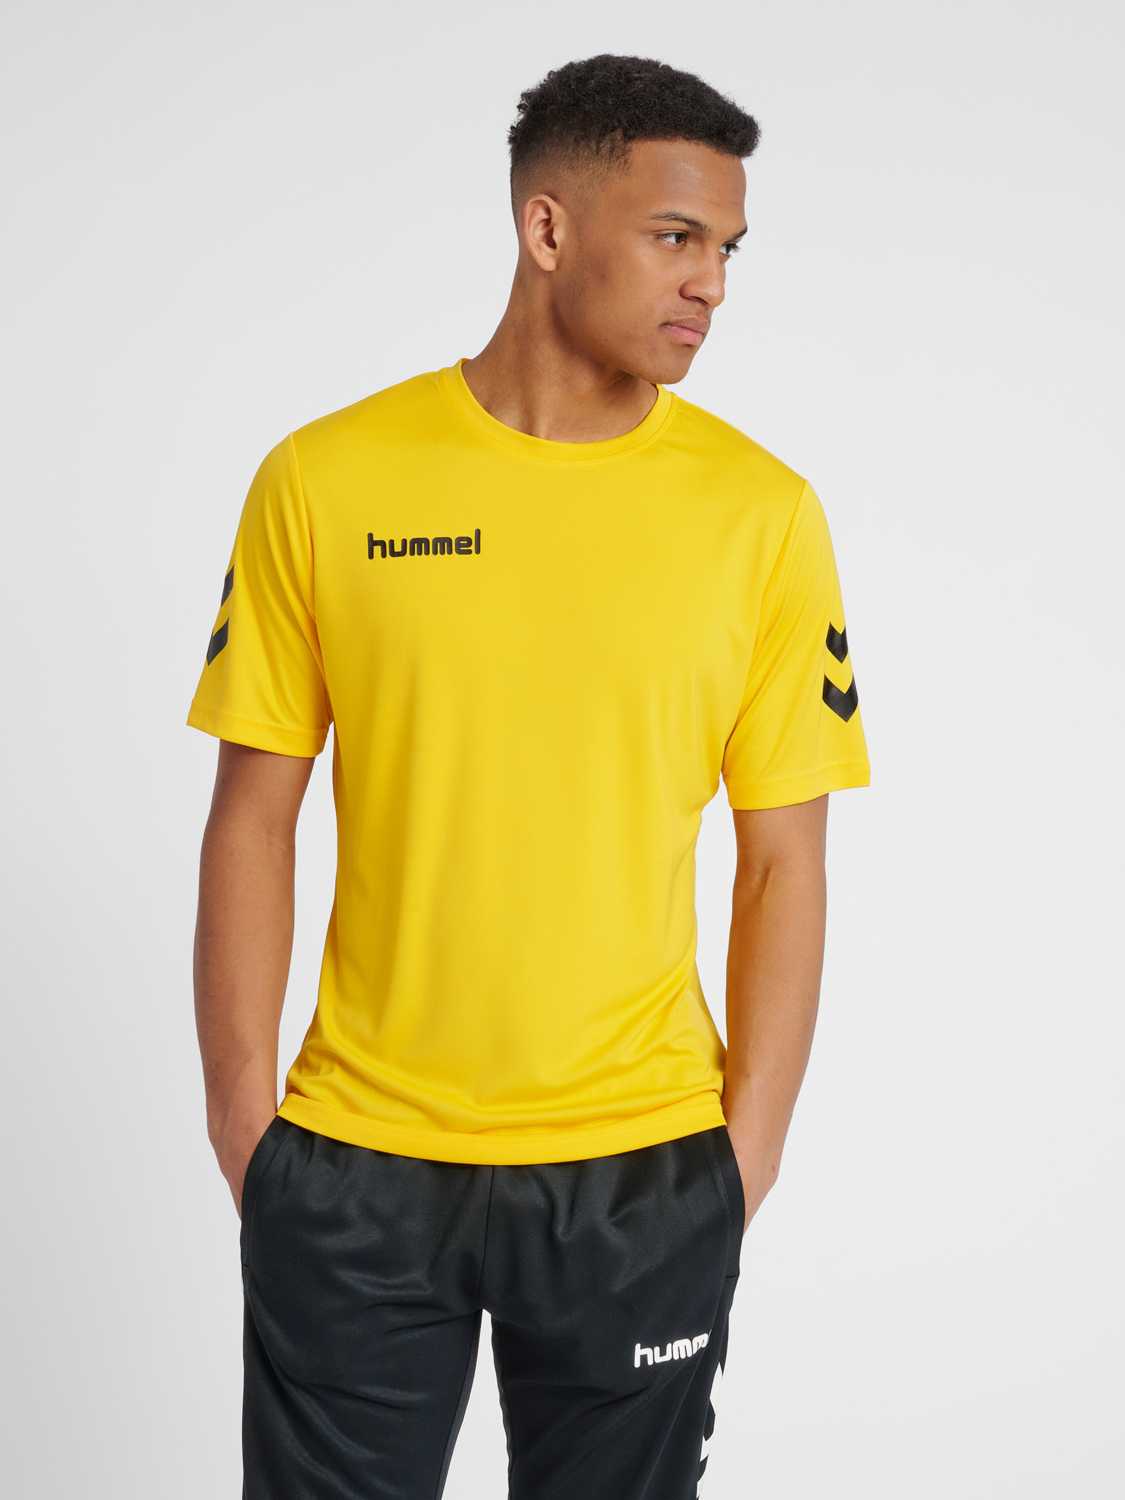 Details about   Hummel Core Kids Football Sports Training Workout Long Sleeve Jersey Shirt Top 